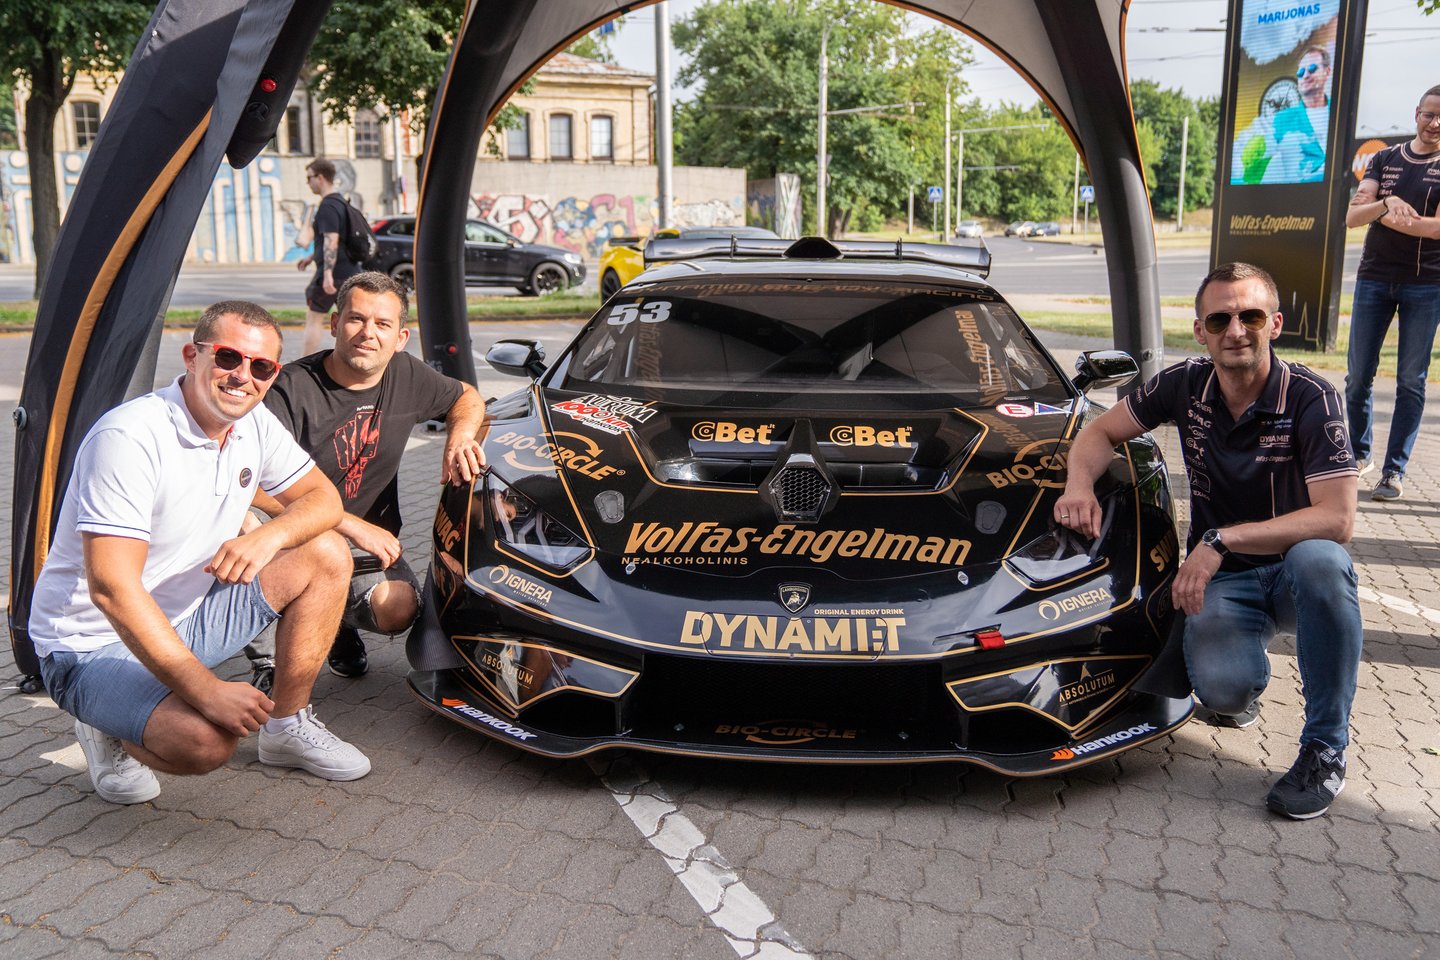  Lenktynininkai nekantrauja išbandyti „Lamborghini“ Palangoje vyksiančiose lenktynėse.<br> G.Bitvinsko nuotr.